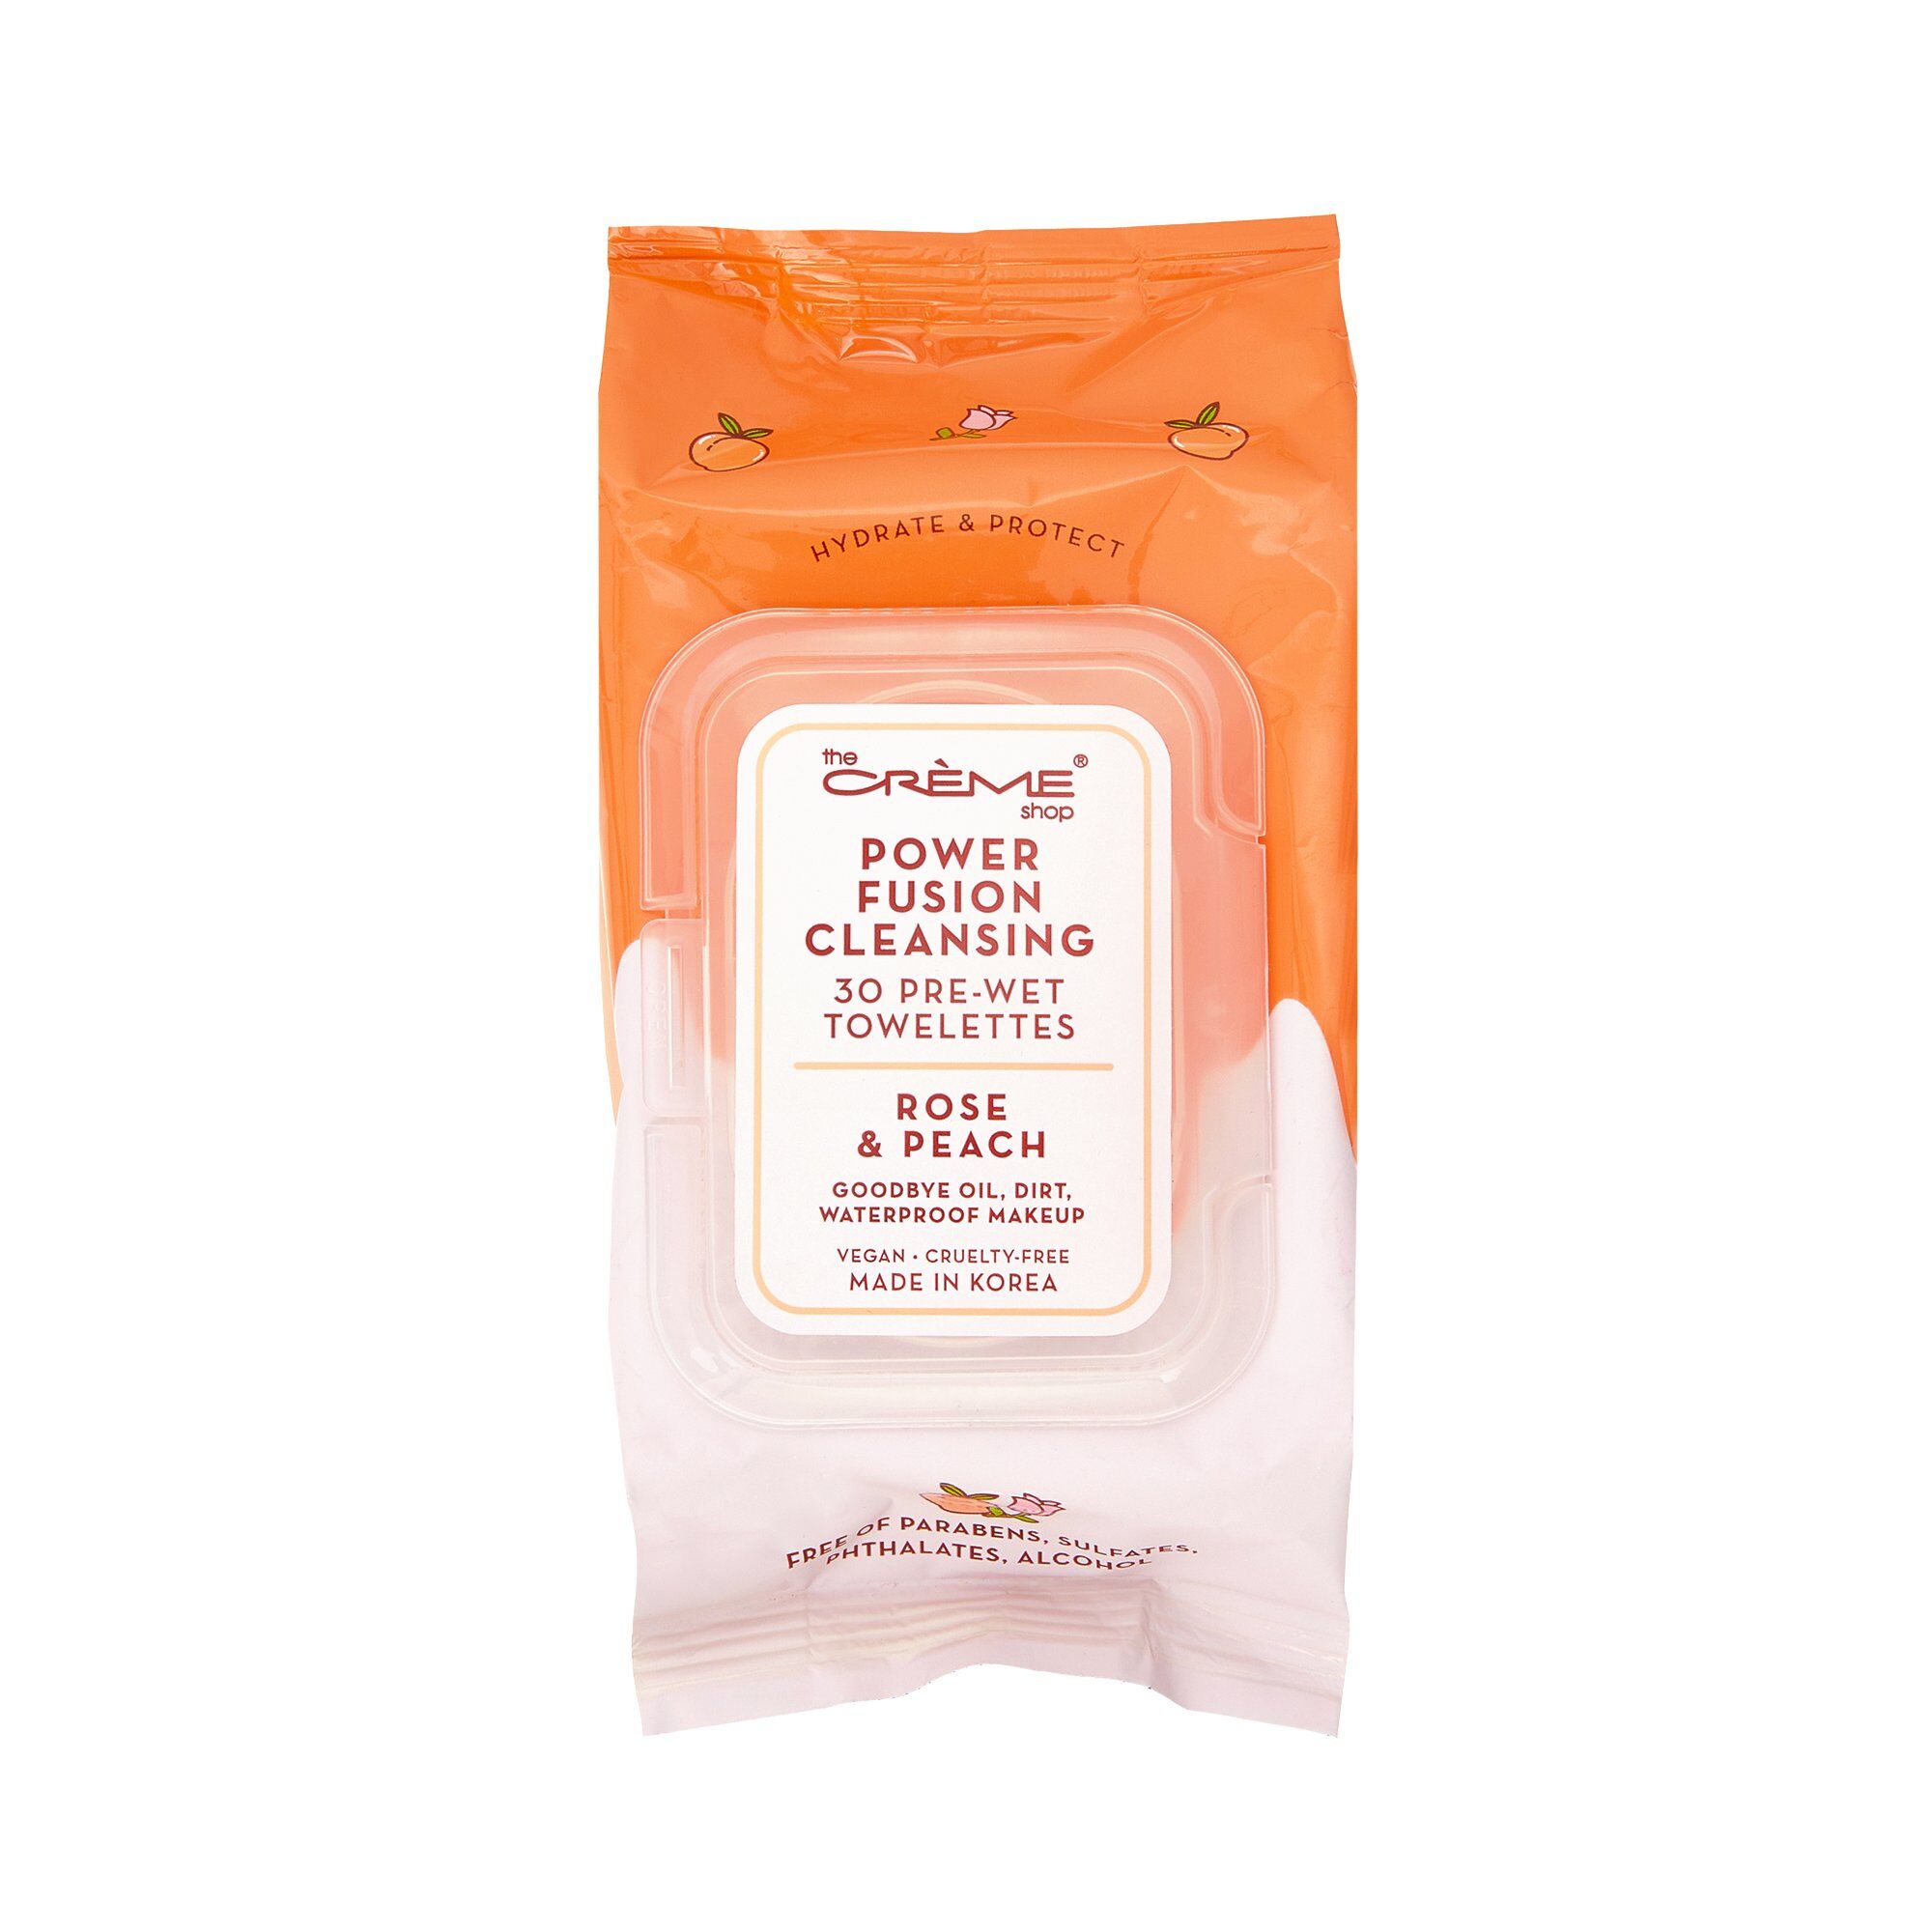 The Crème Shop - Power Fusion Cleansing 30 Pre-Wet Towelettes - Rose & Peach